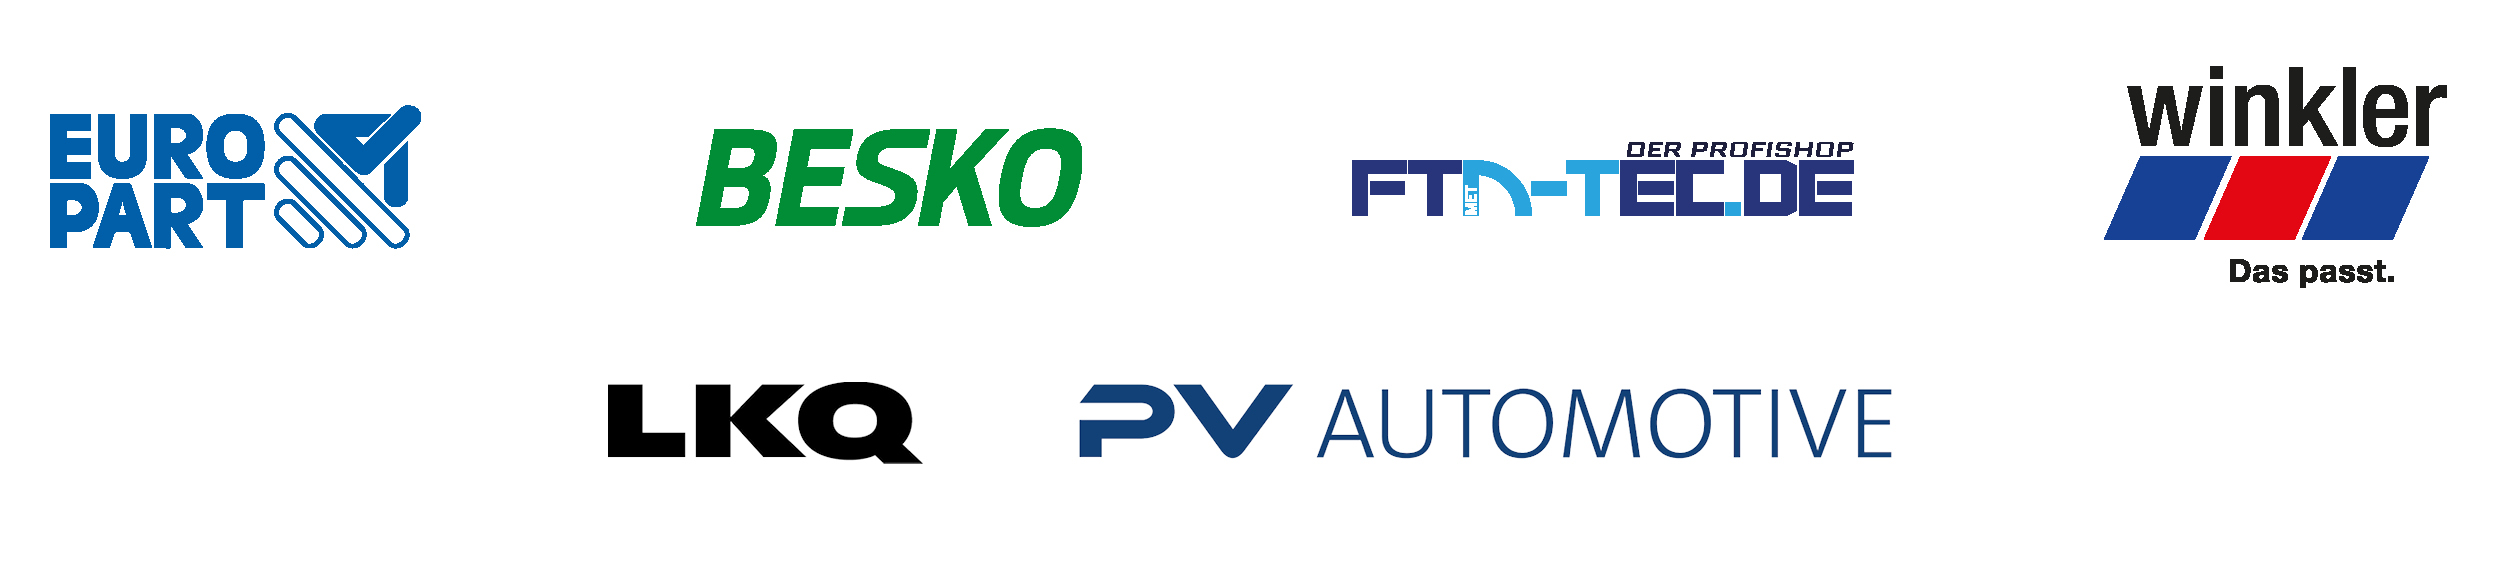 Logos von Europart, Besko, FTD-Tec.de, Winkler, LKQ, PV Automotive.